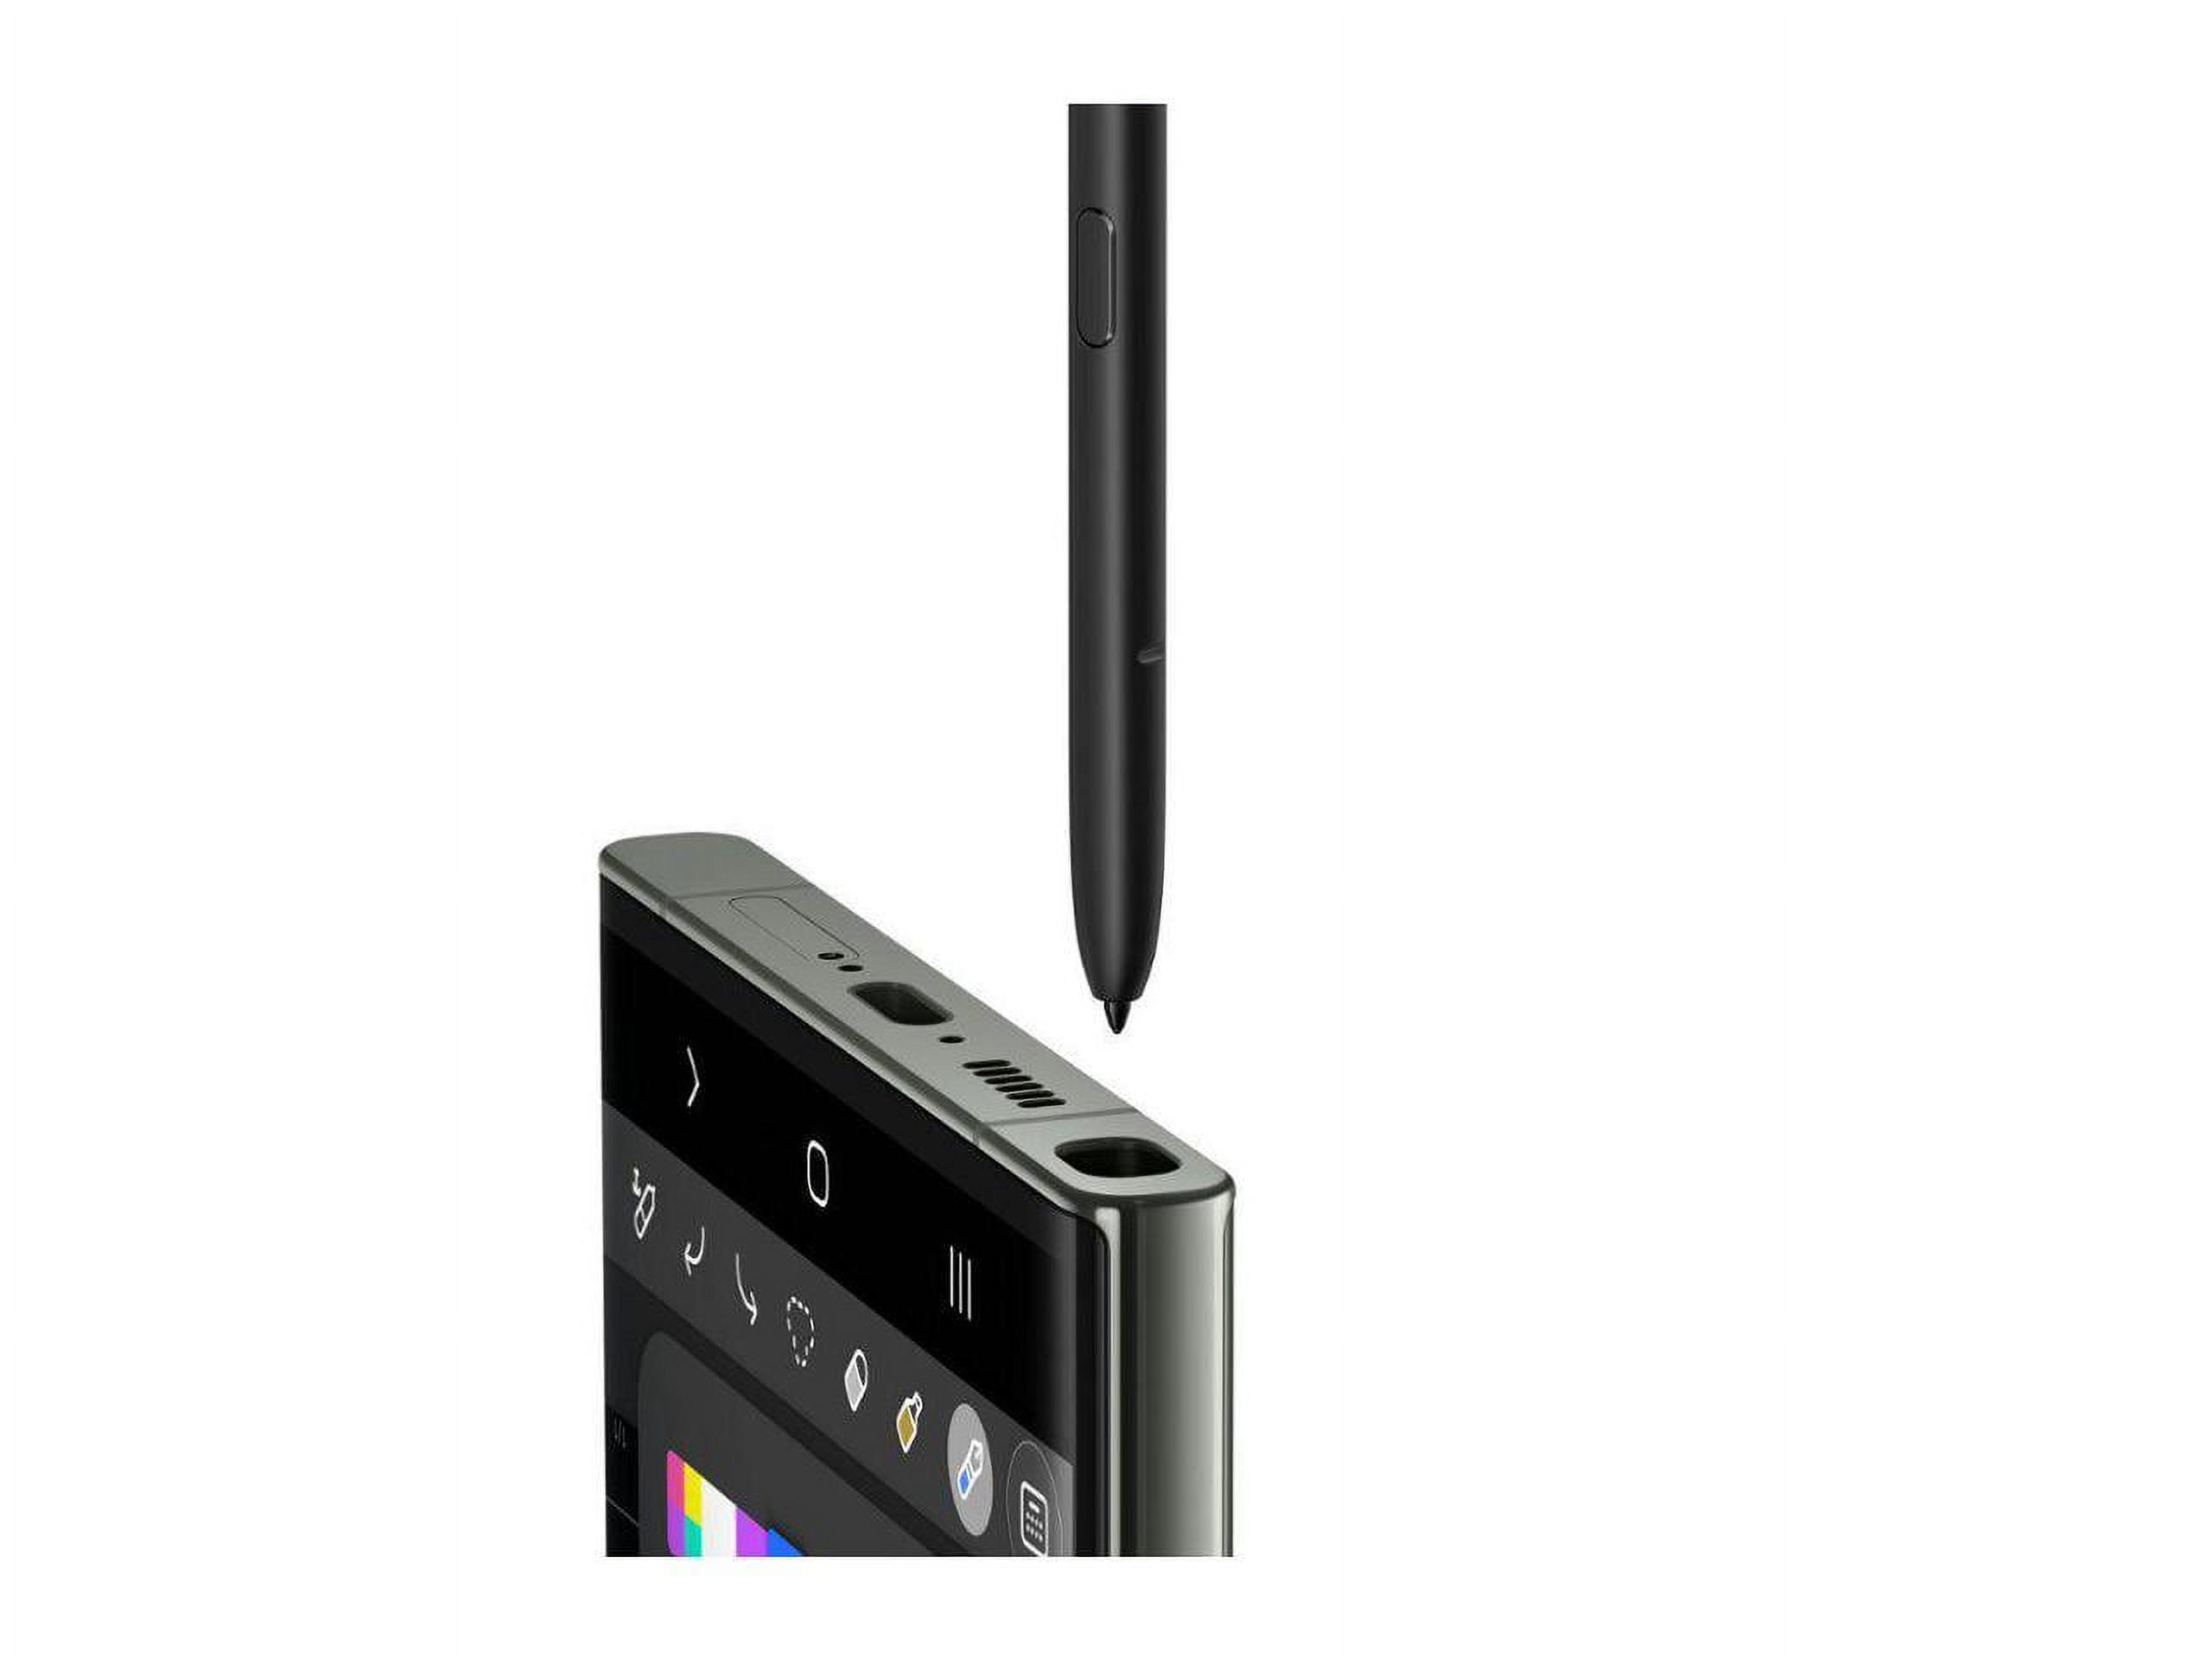 Samsung Galaxy S23 Ultra SM-918U1 512 GB Smartphone - 6.8 Dynamic AMOLED  QHD/ 3088 x 1440 - 12 GB RAM - Andro 